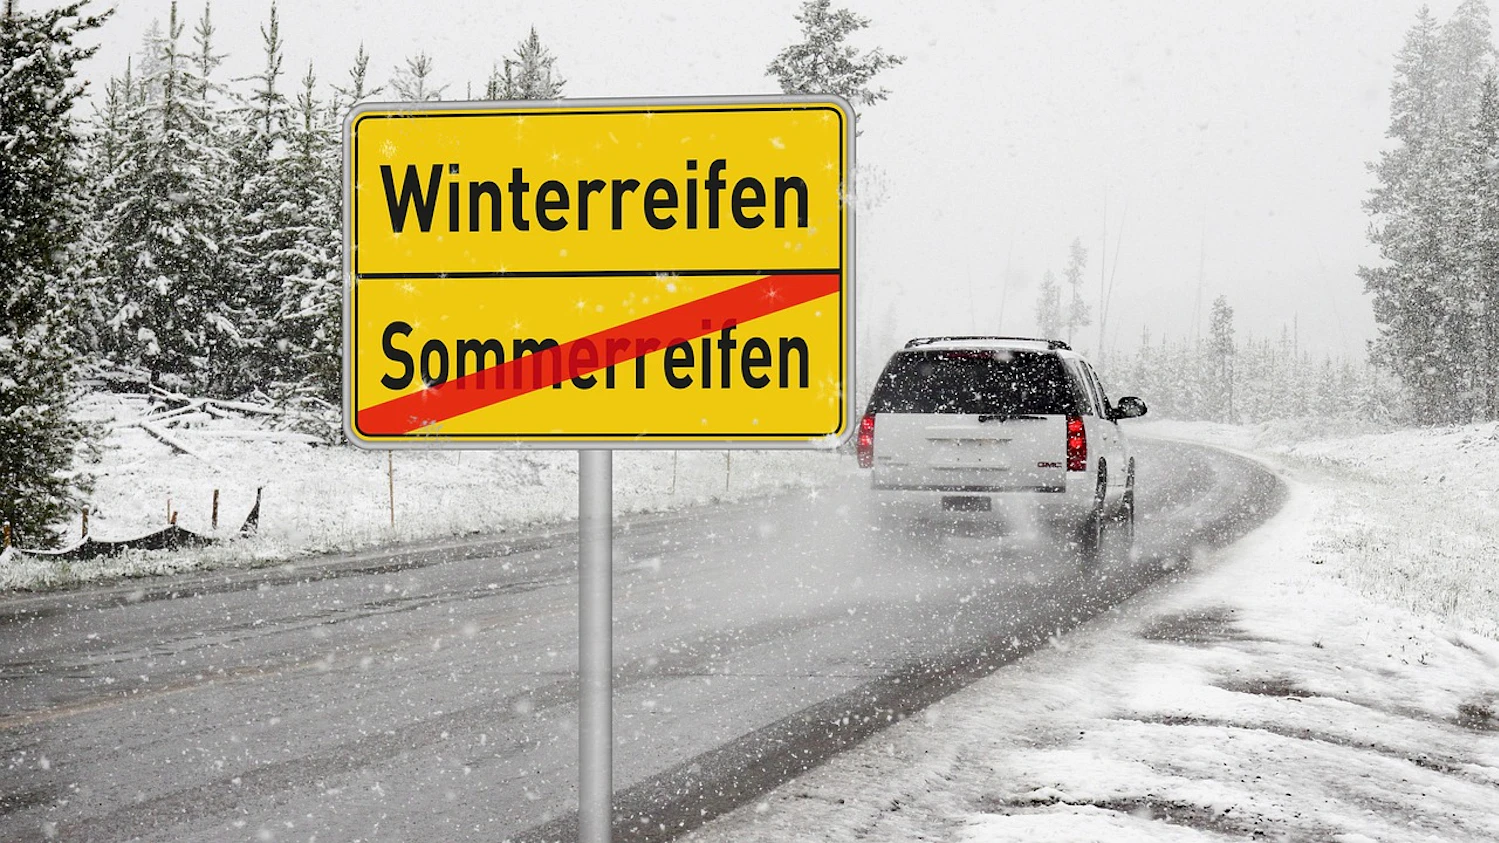 Türschlossenteiser » Ratgeber: Autofahren im Winter